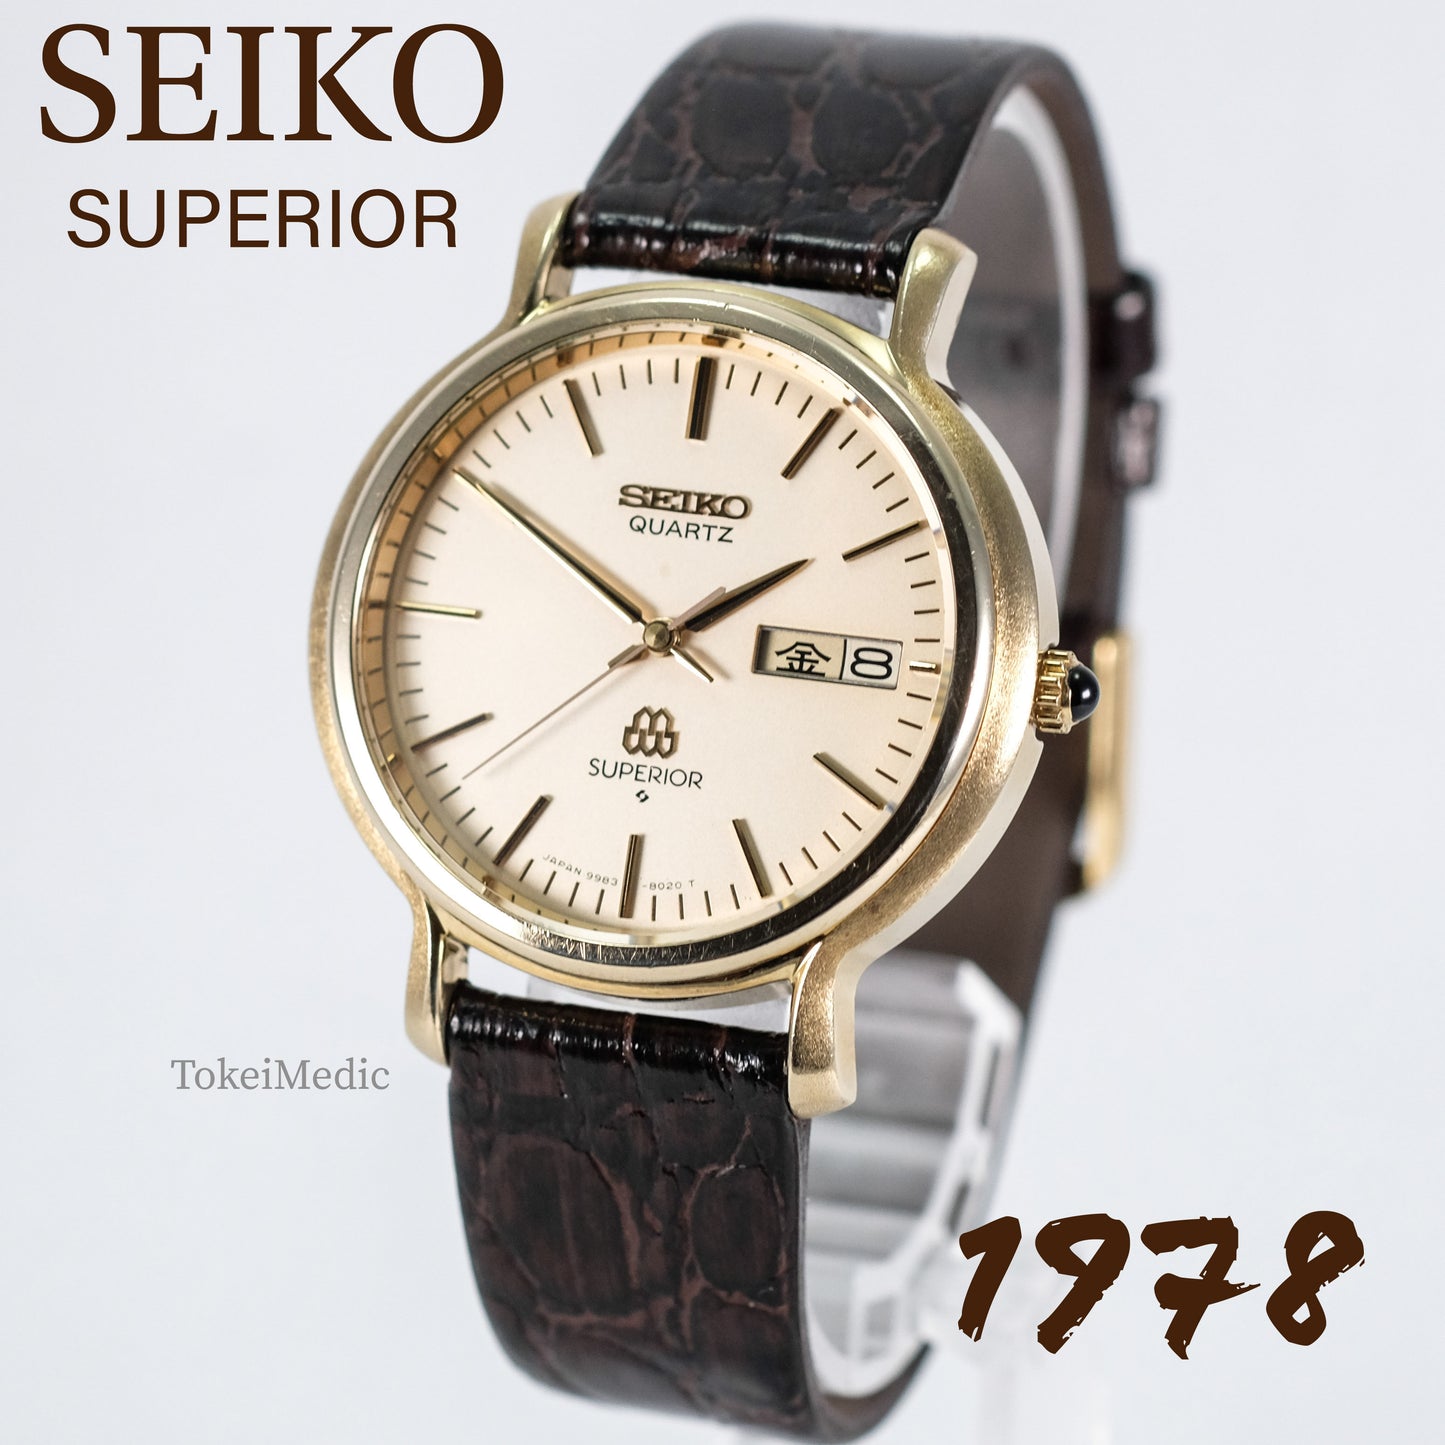 1978 Seiko Superior 9983-8020